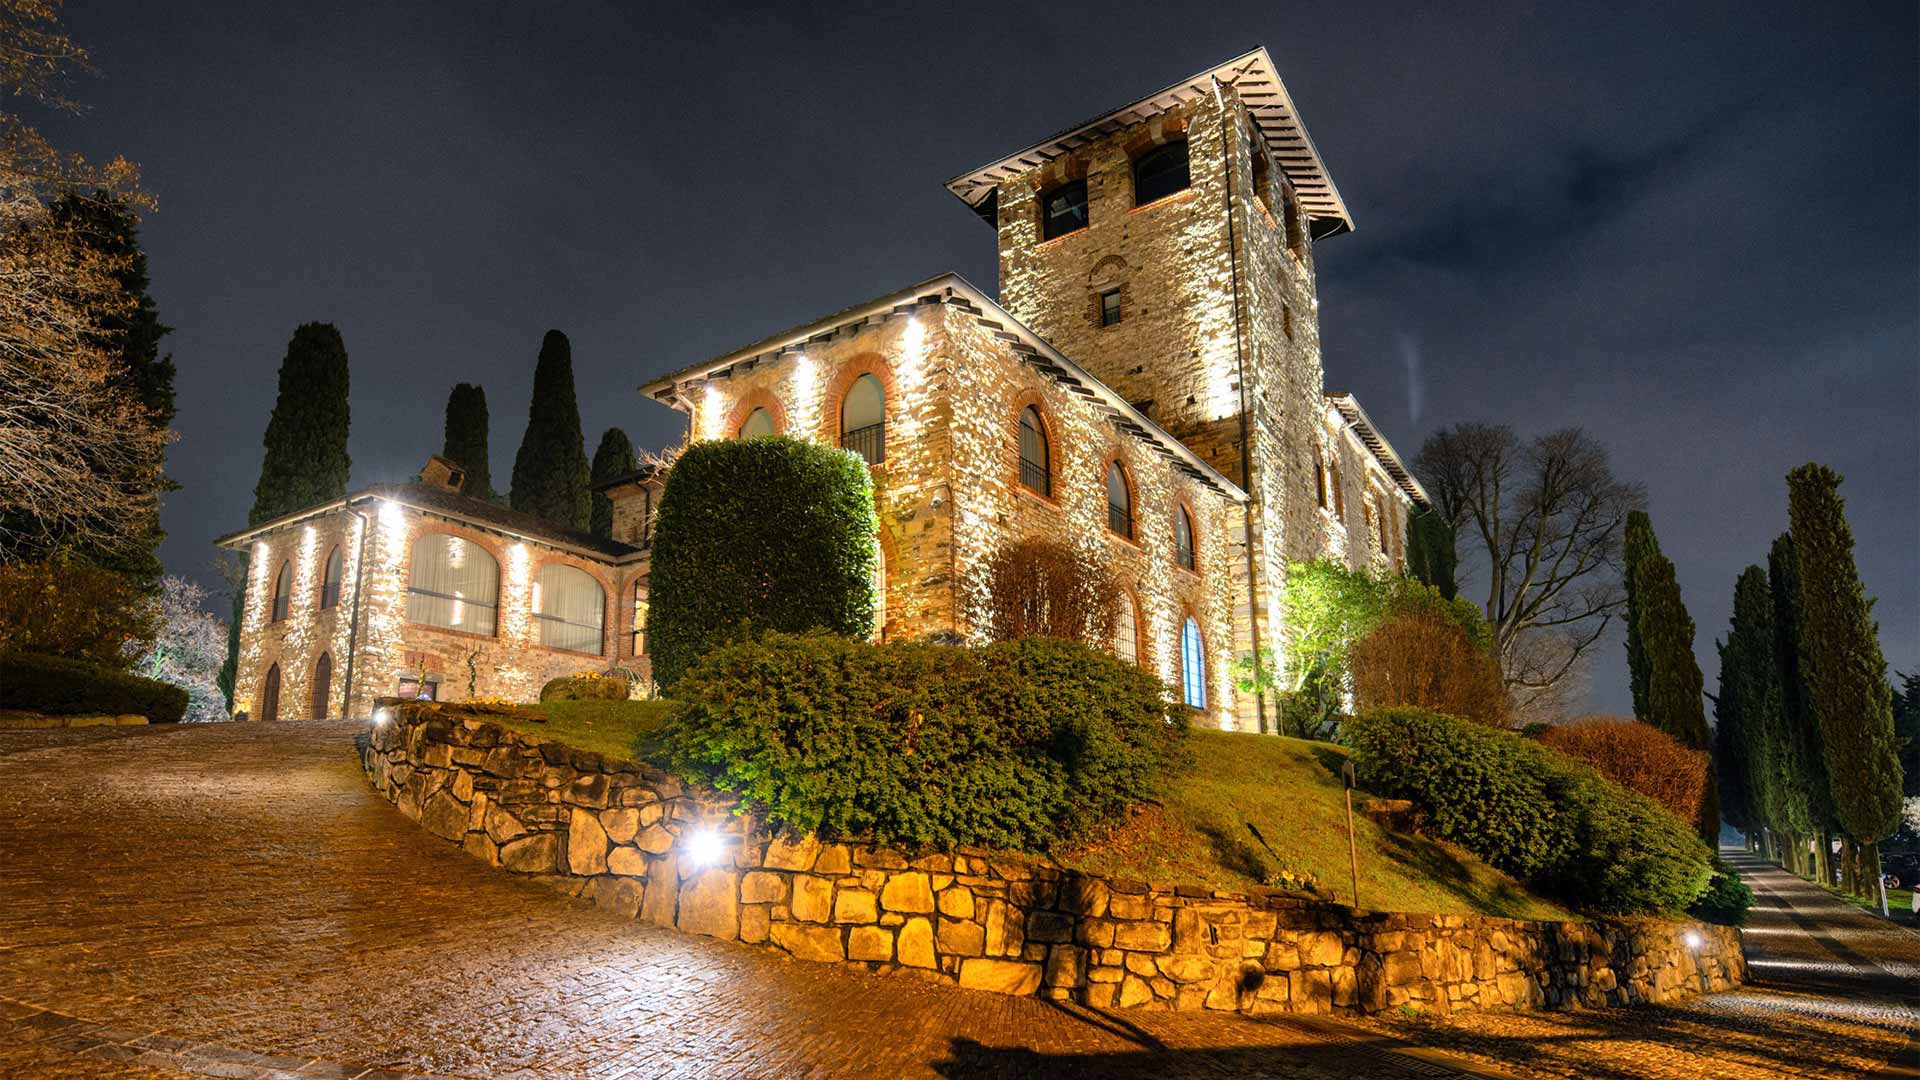 Castello di Casiglio - Our events 2